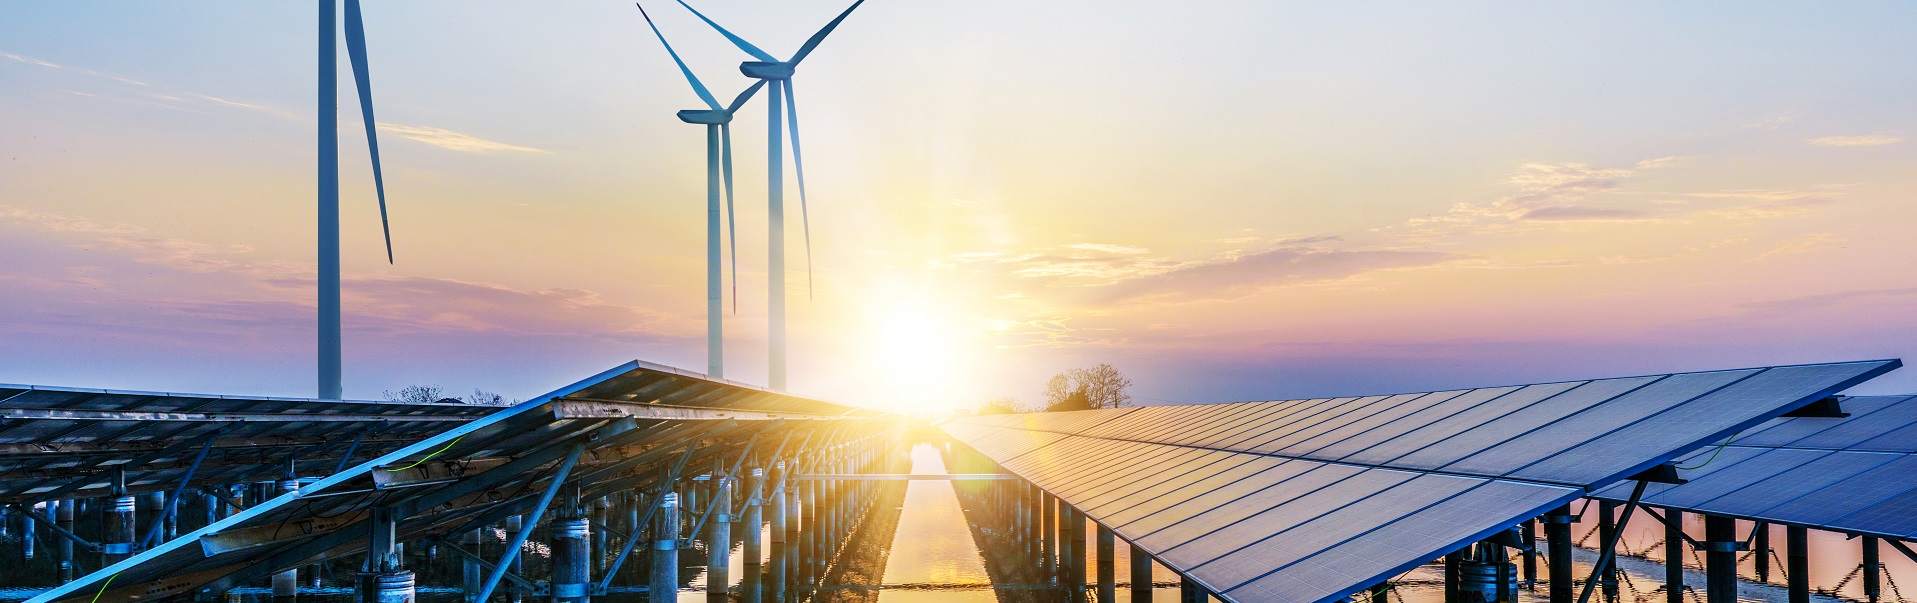 Erneuerbare Energien: Windkraftanlagen und Solaranlagen im Sonnenuntergang